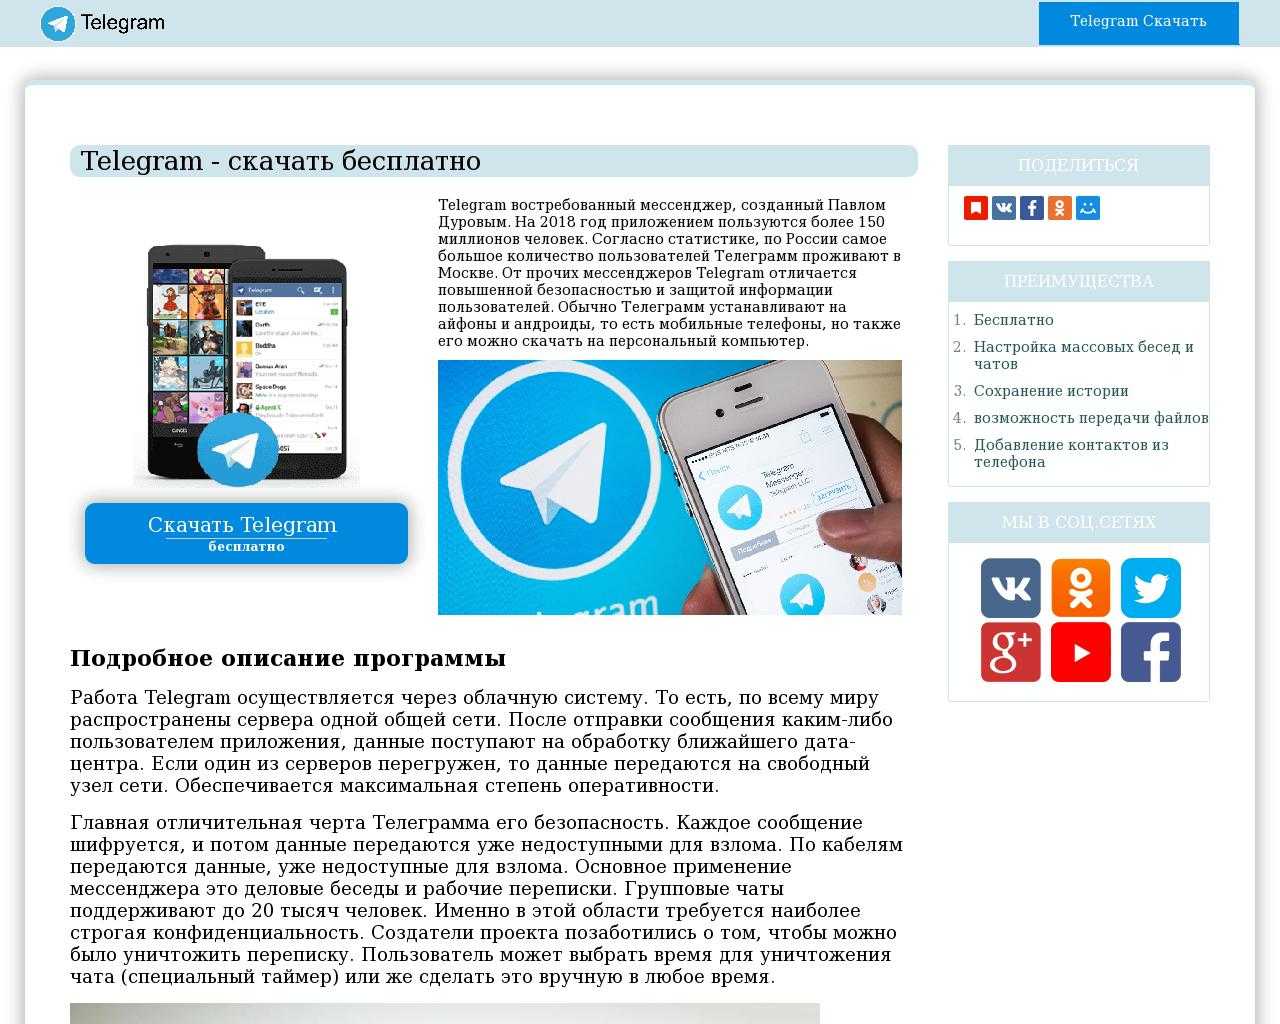 Телеграмм веб скачать на телефон бесплатно русском фото 76